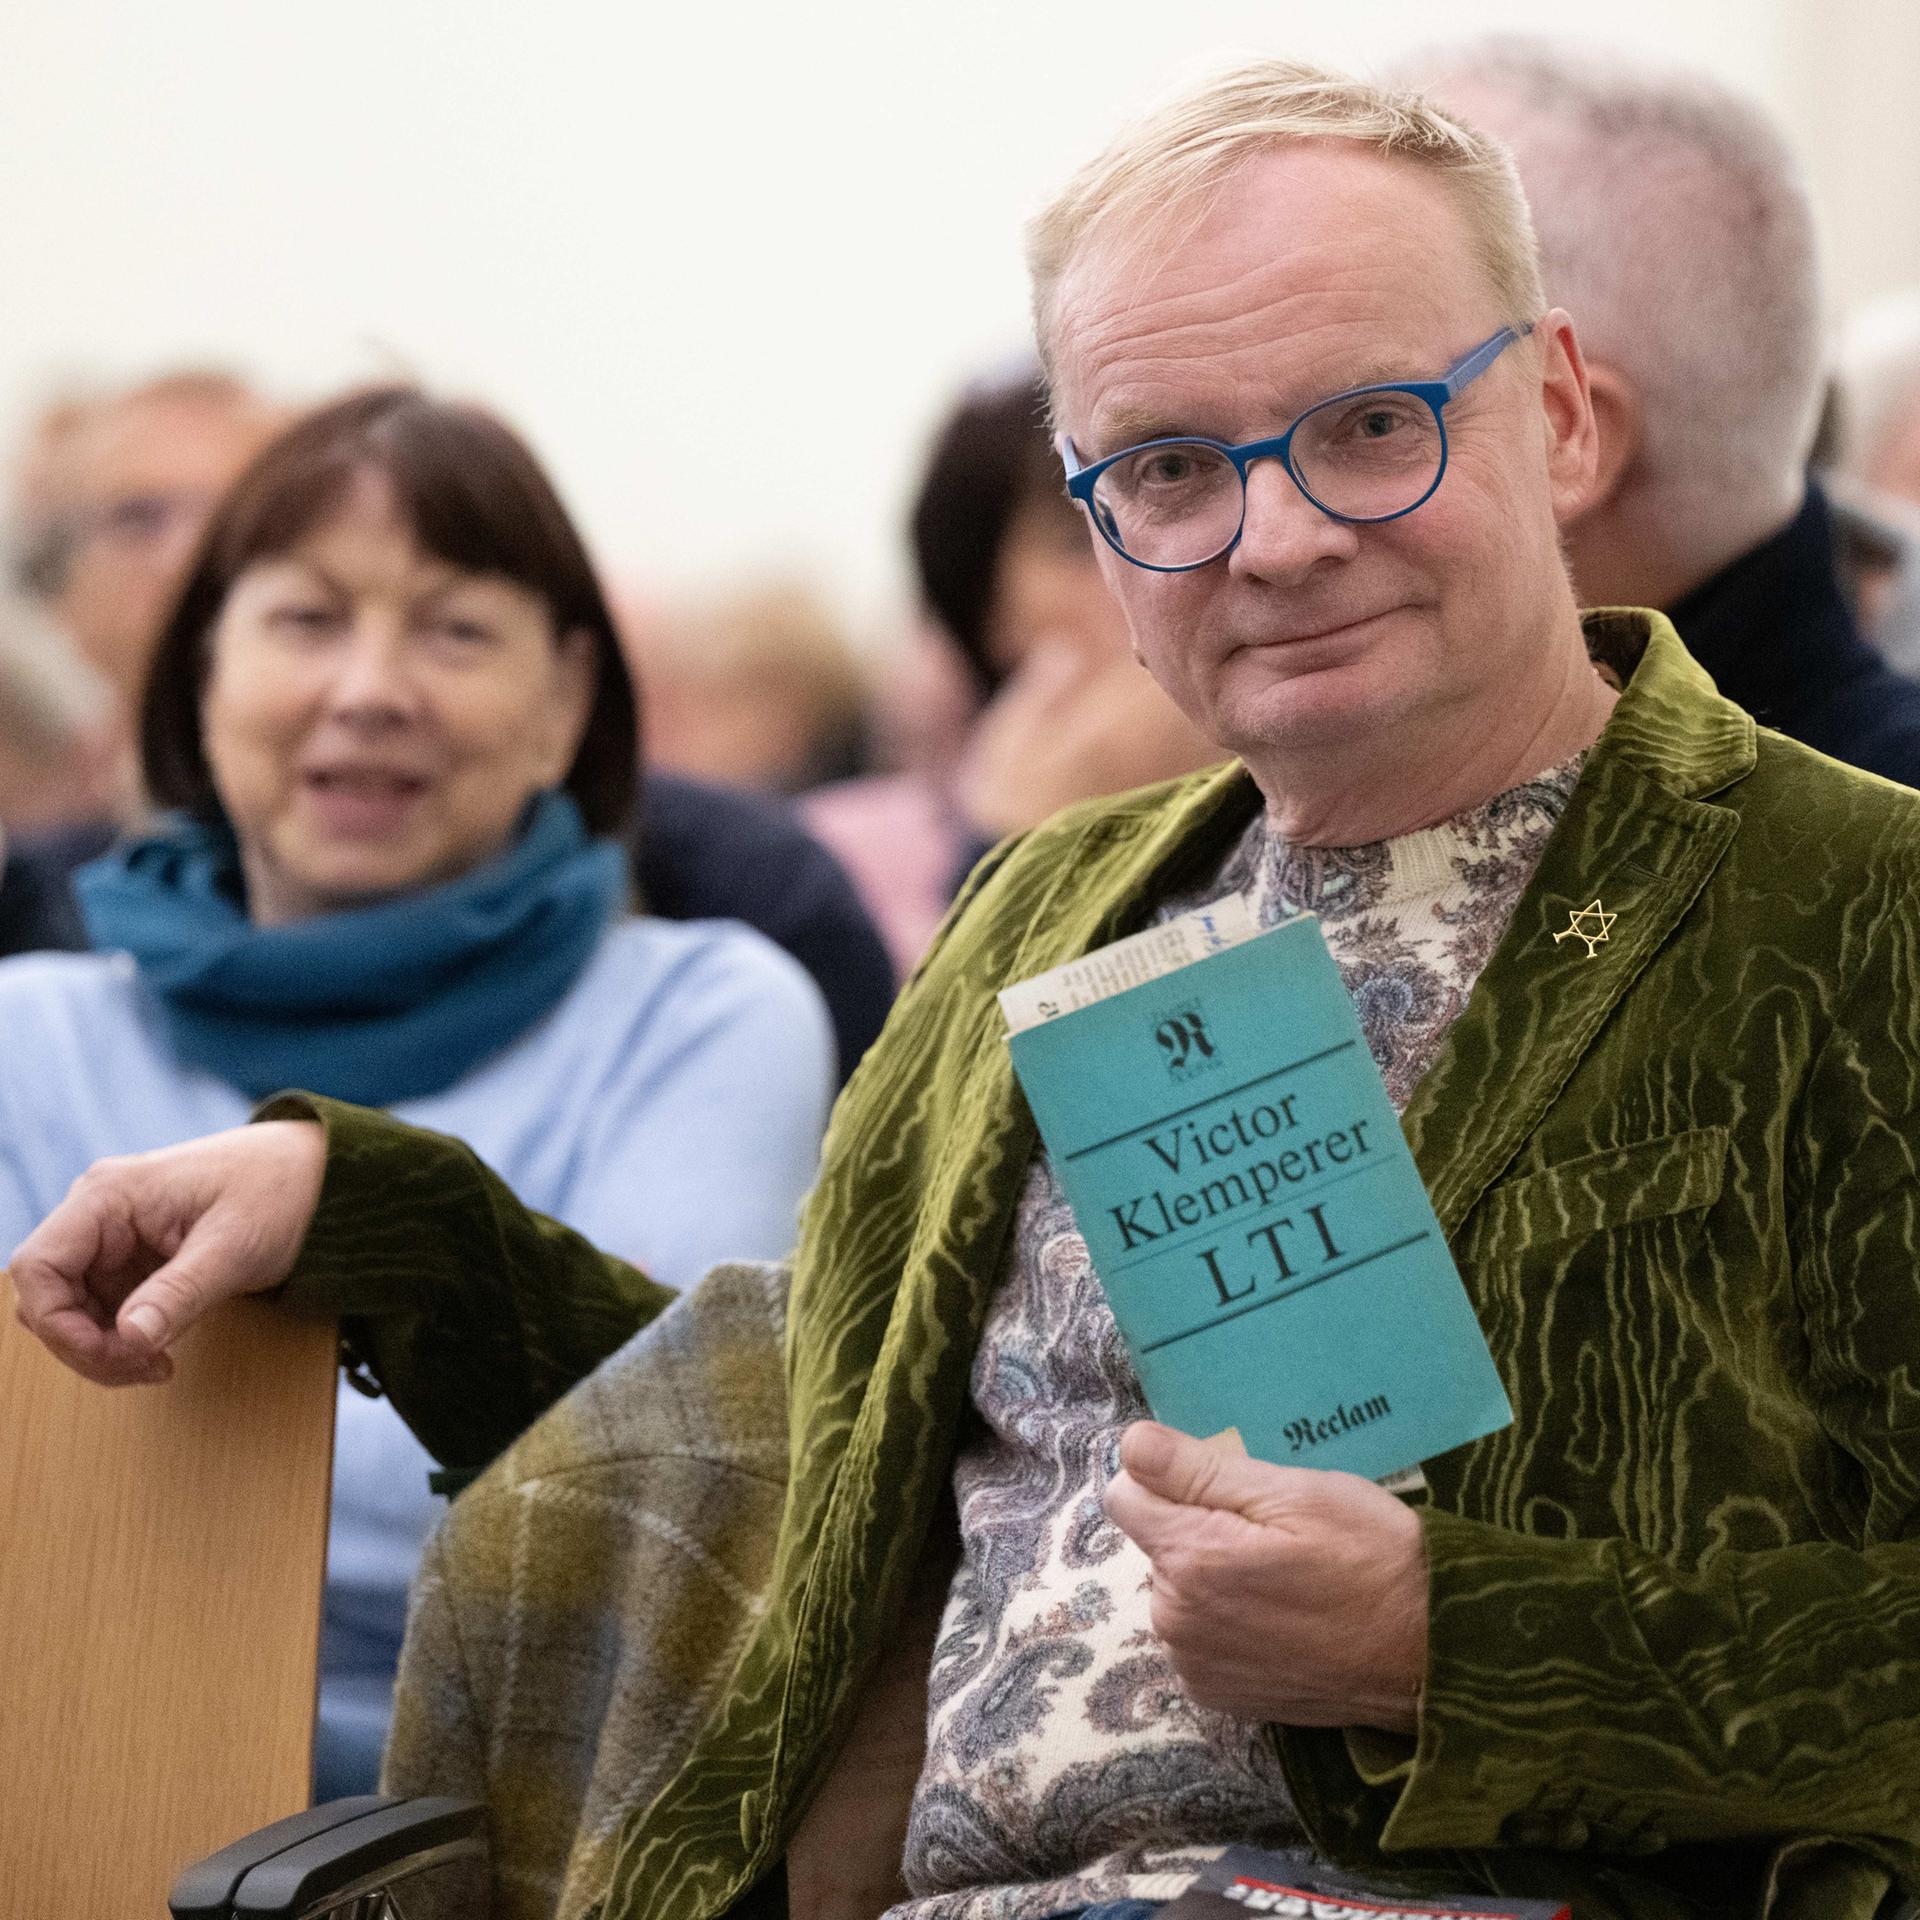 Der Kabarettist Uwe Steimle sitzt vor Beginn einer Lesung aus dem Buch "LTI" von Victor Klemperer in Dresden.